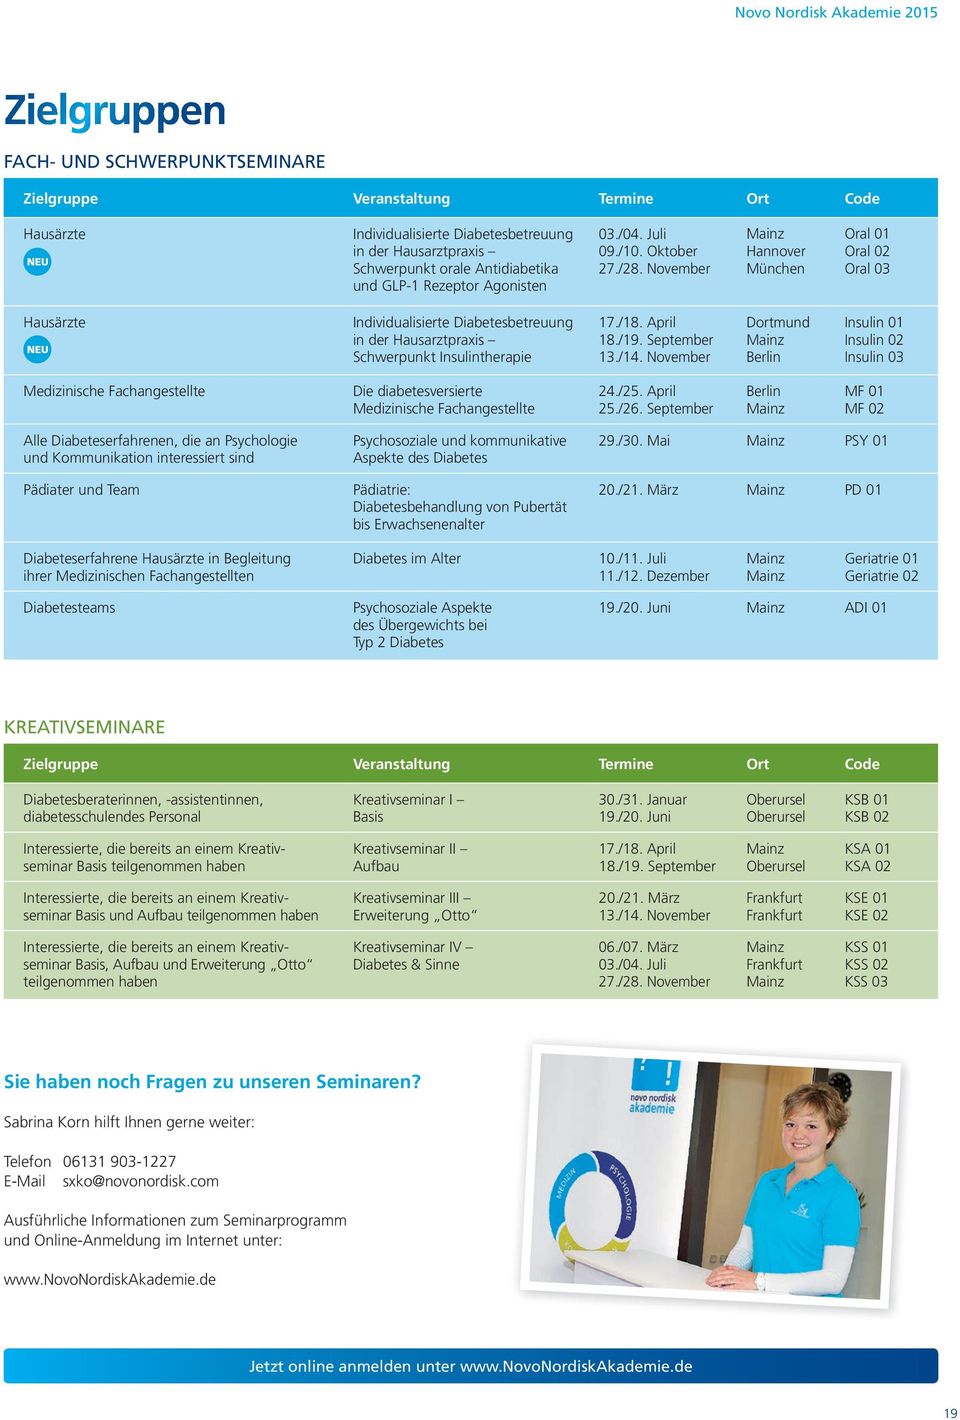 November Mainz Hannover München Oral 01 Oral 02 Oral 03 Hausärzte Individualisierte Diabetesbetreuung in der Hausarztpraxis Schwerpunkt Insulintherapie 17./18. April 18./19. September 13./14.